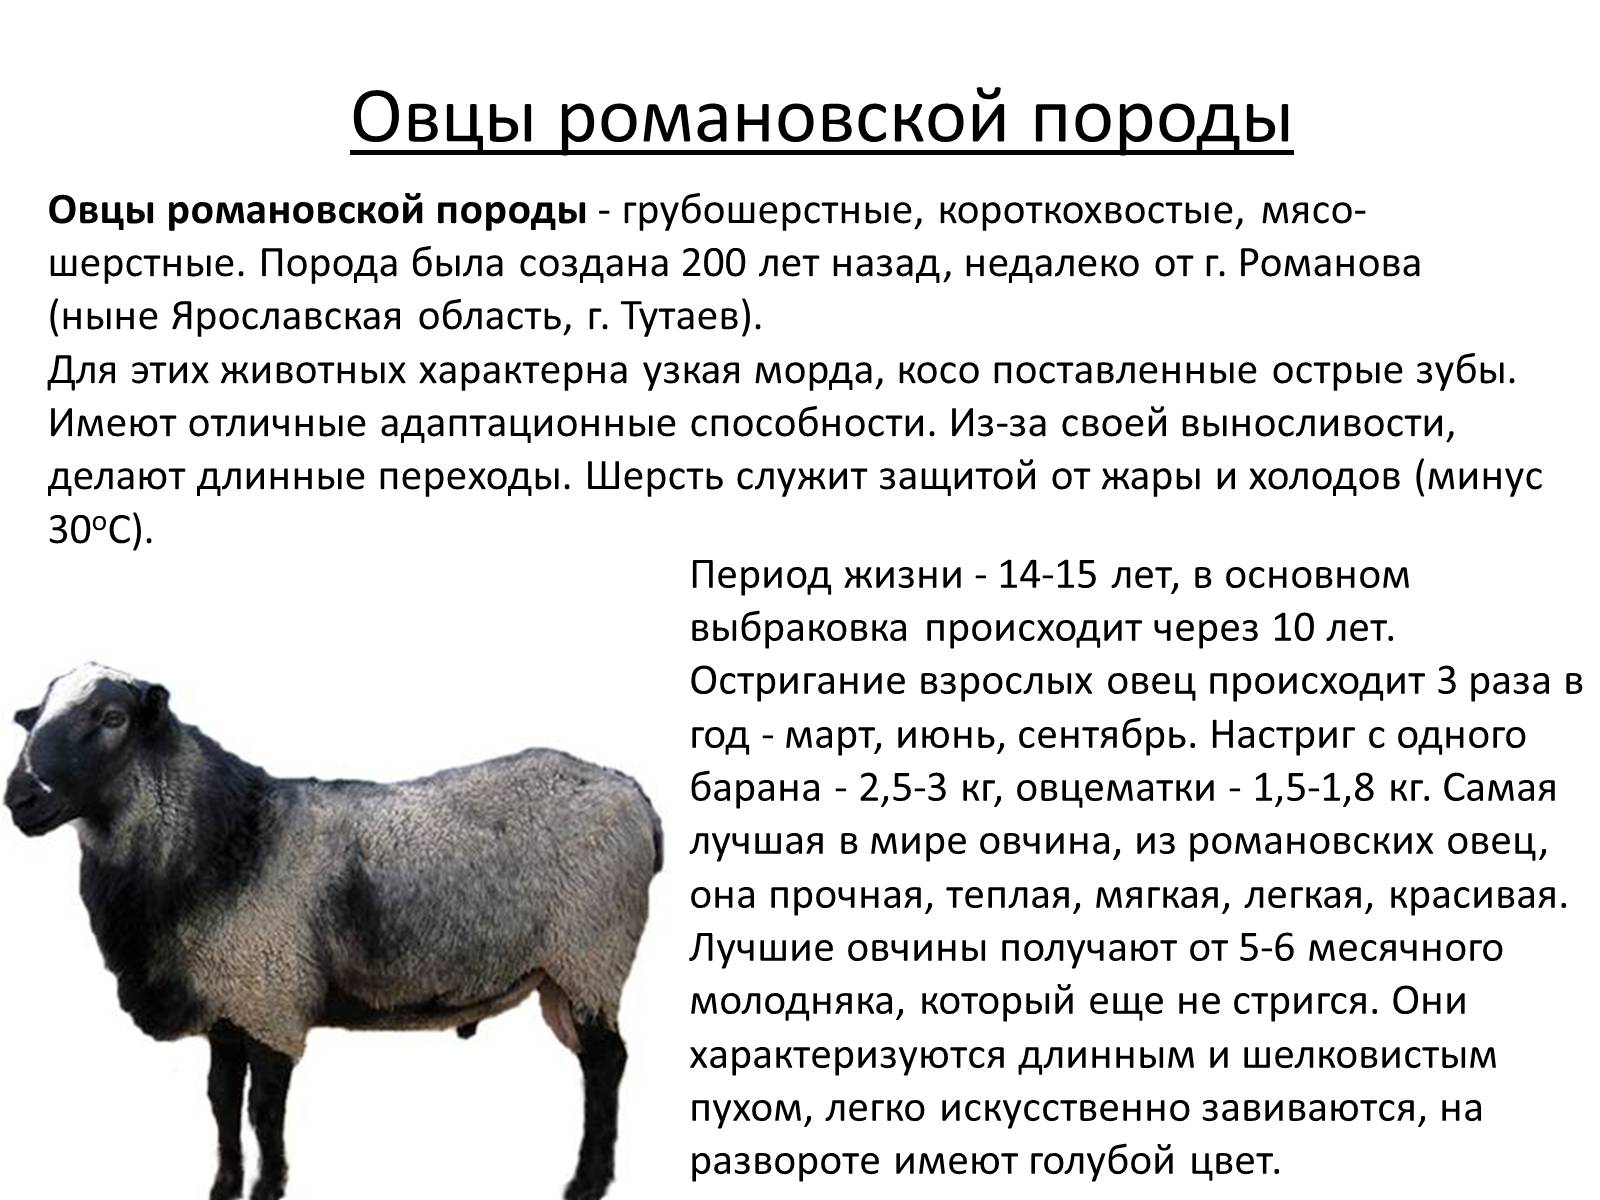 Какой вес барана. Грубошерстные породы овец Романовская. Романовская порода овец вес. Романовская порода овец скрещивание. Романовская порода овец 3d.